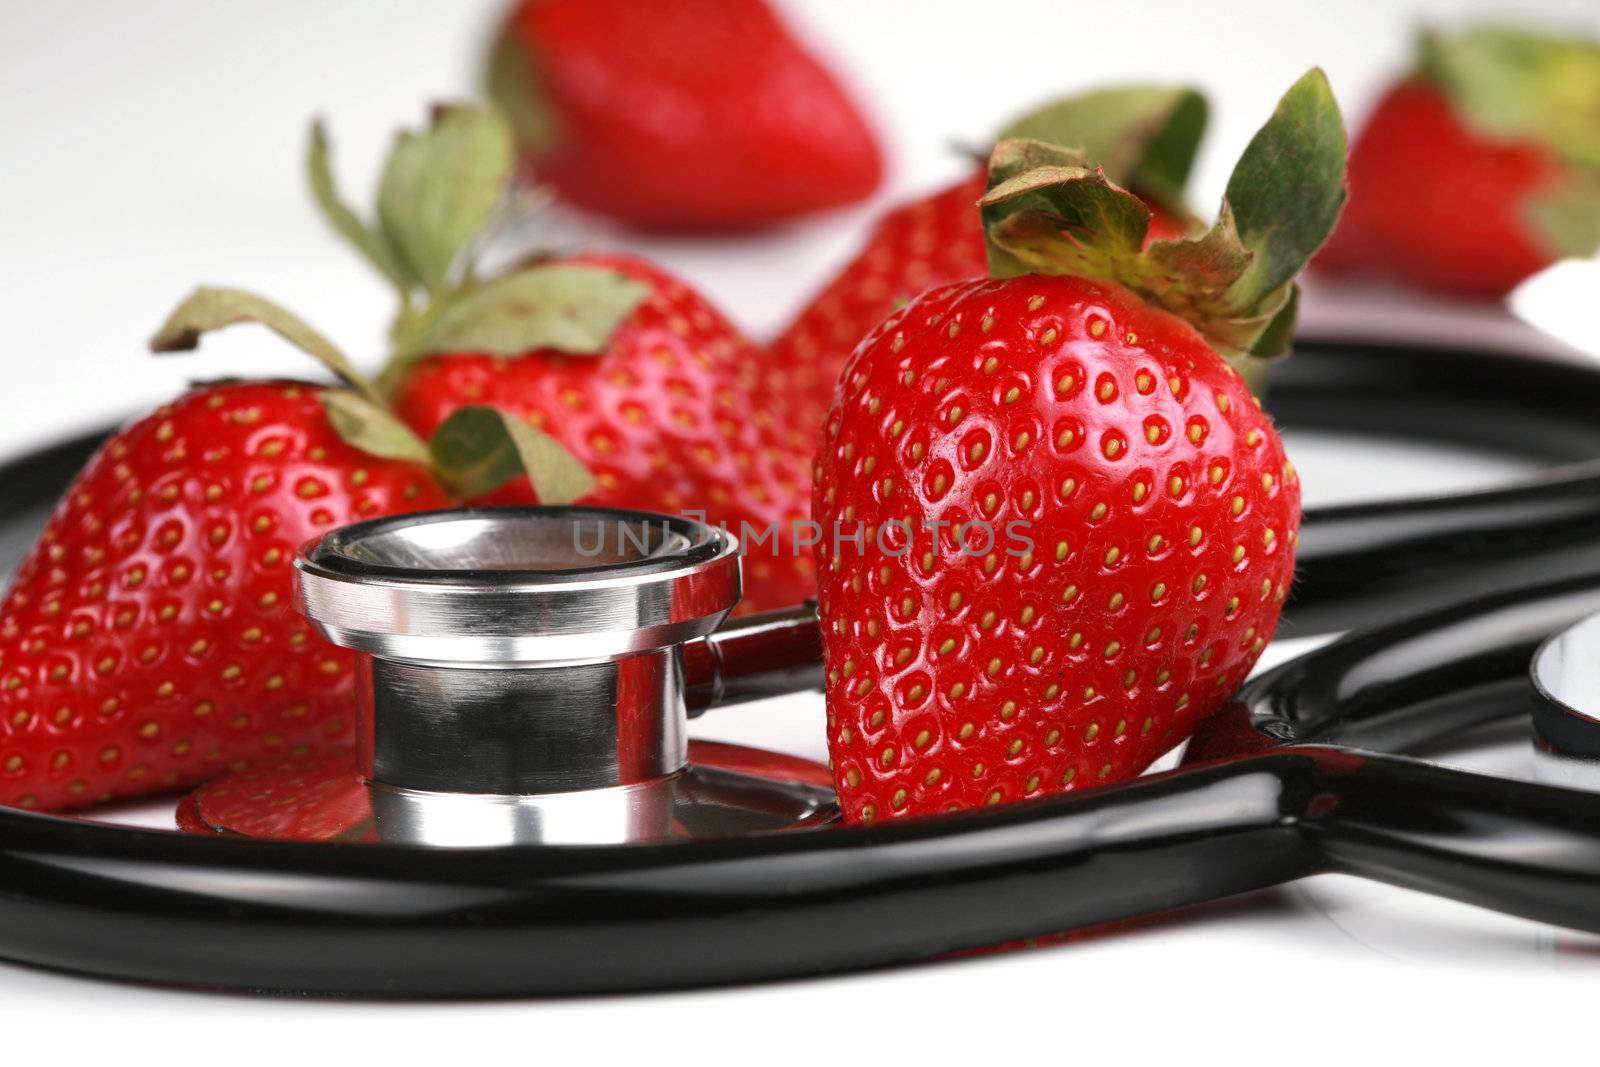 Healthy snack, strawberries by jarenwicklund